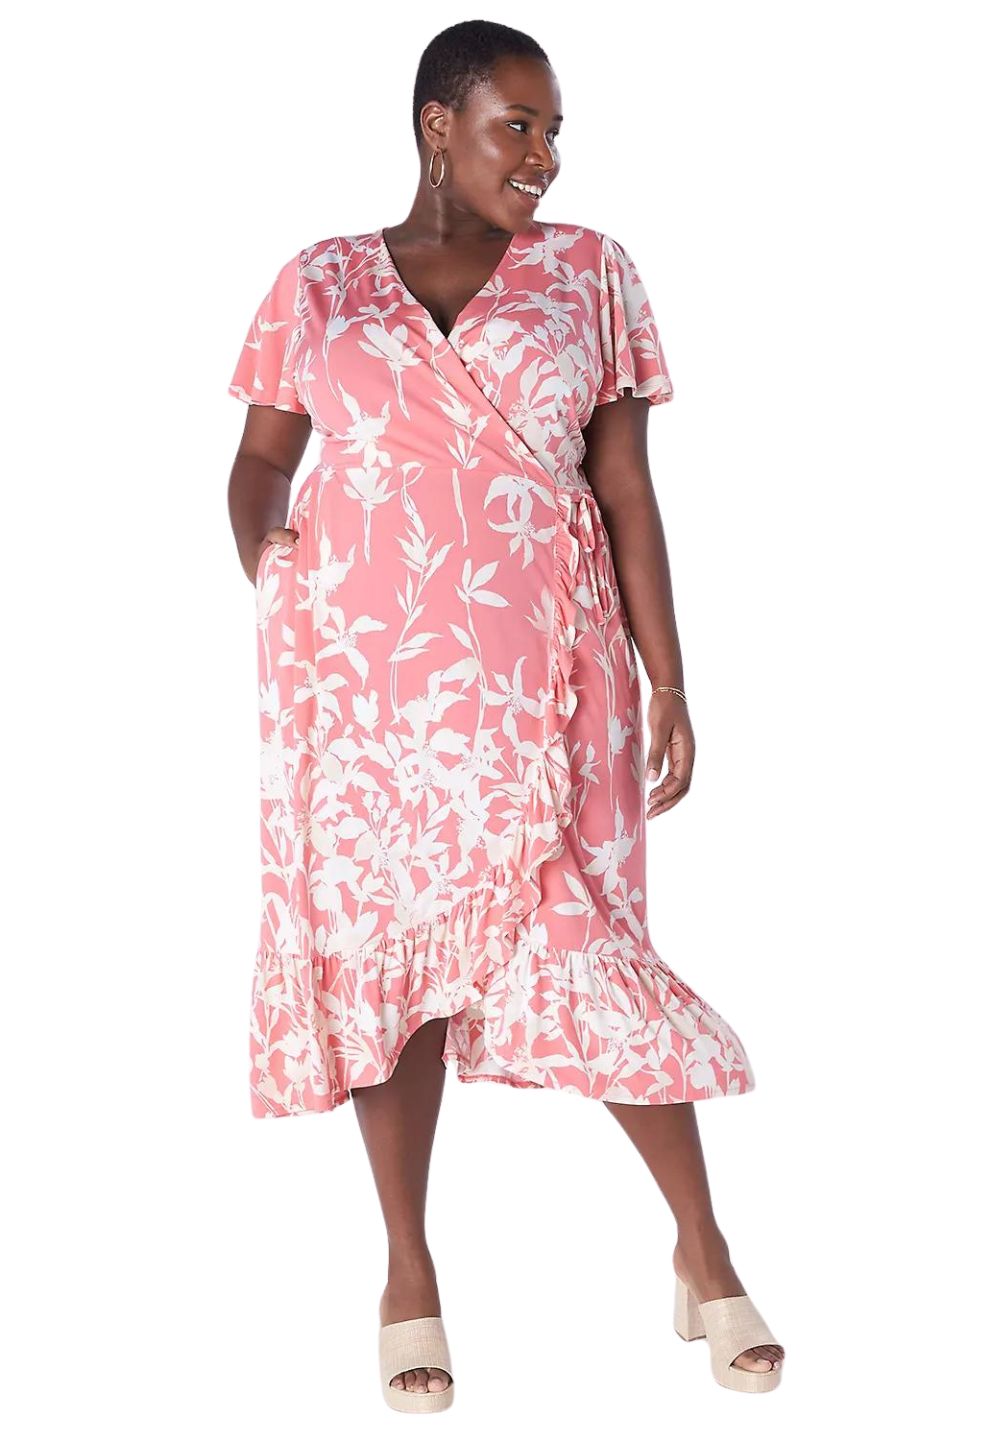 Lane Bryant Faux Wrap Pink Floral Dress, Size 26/28